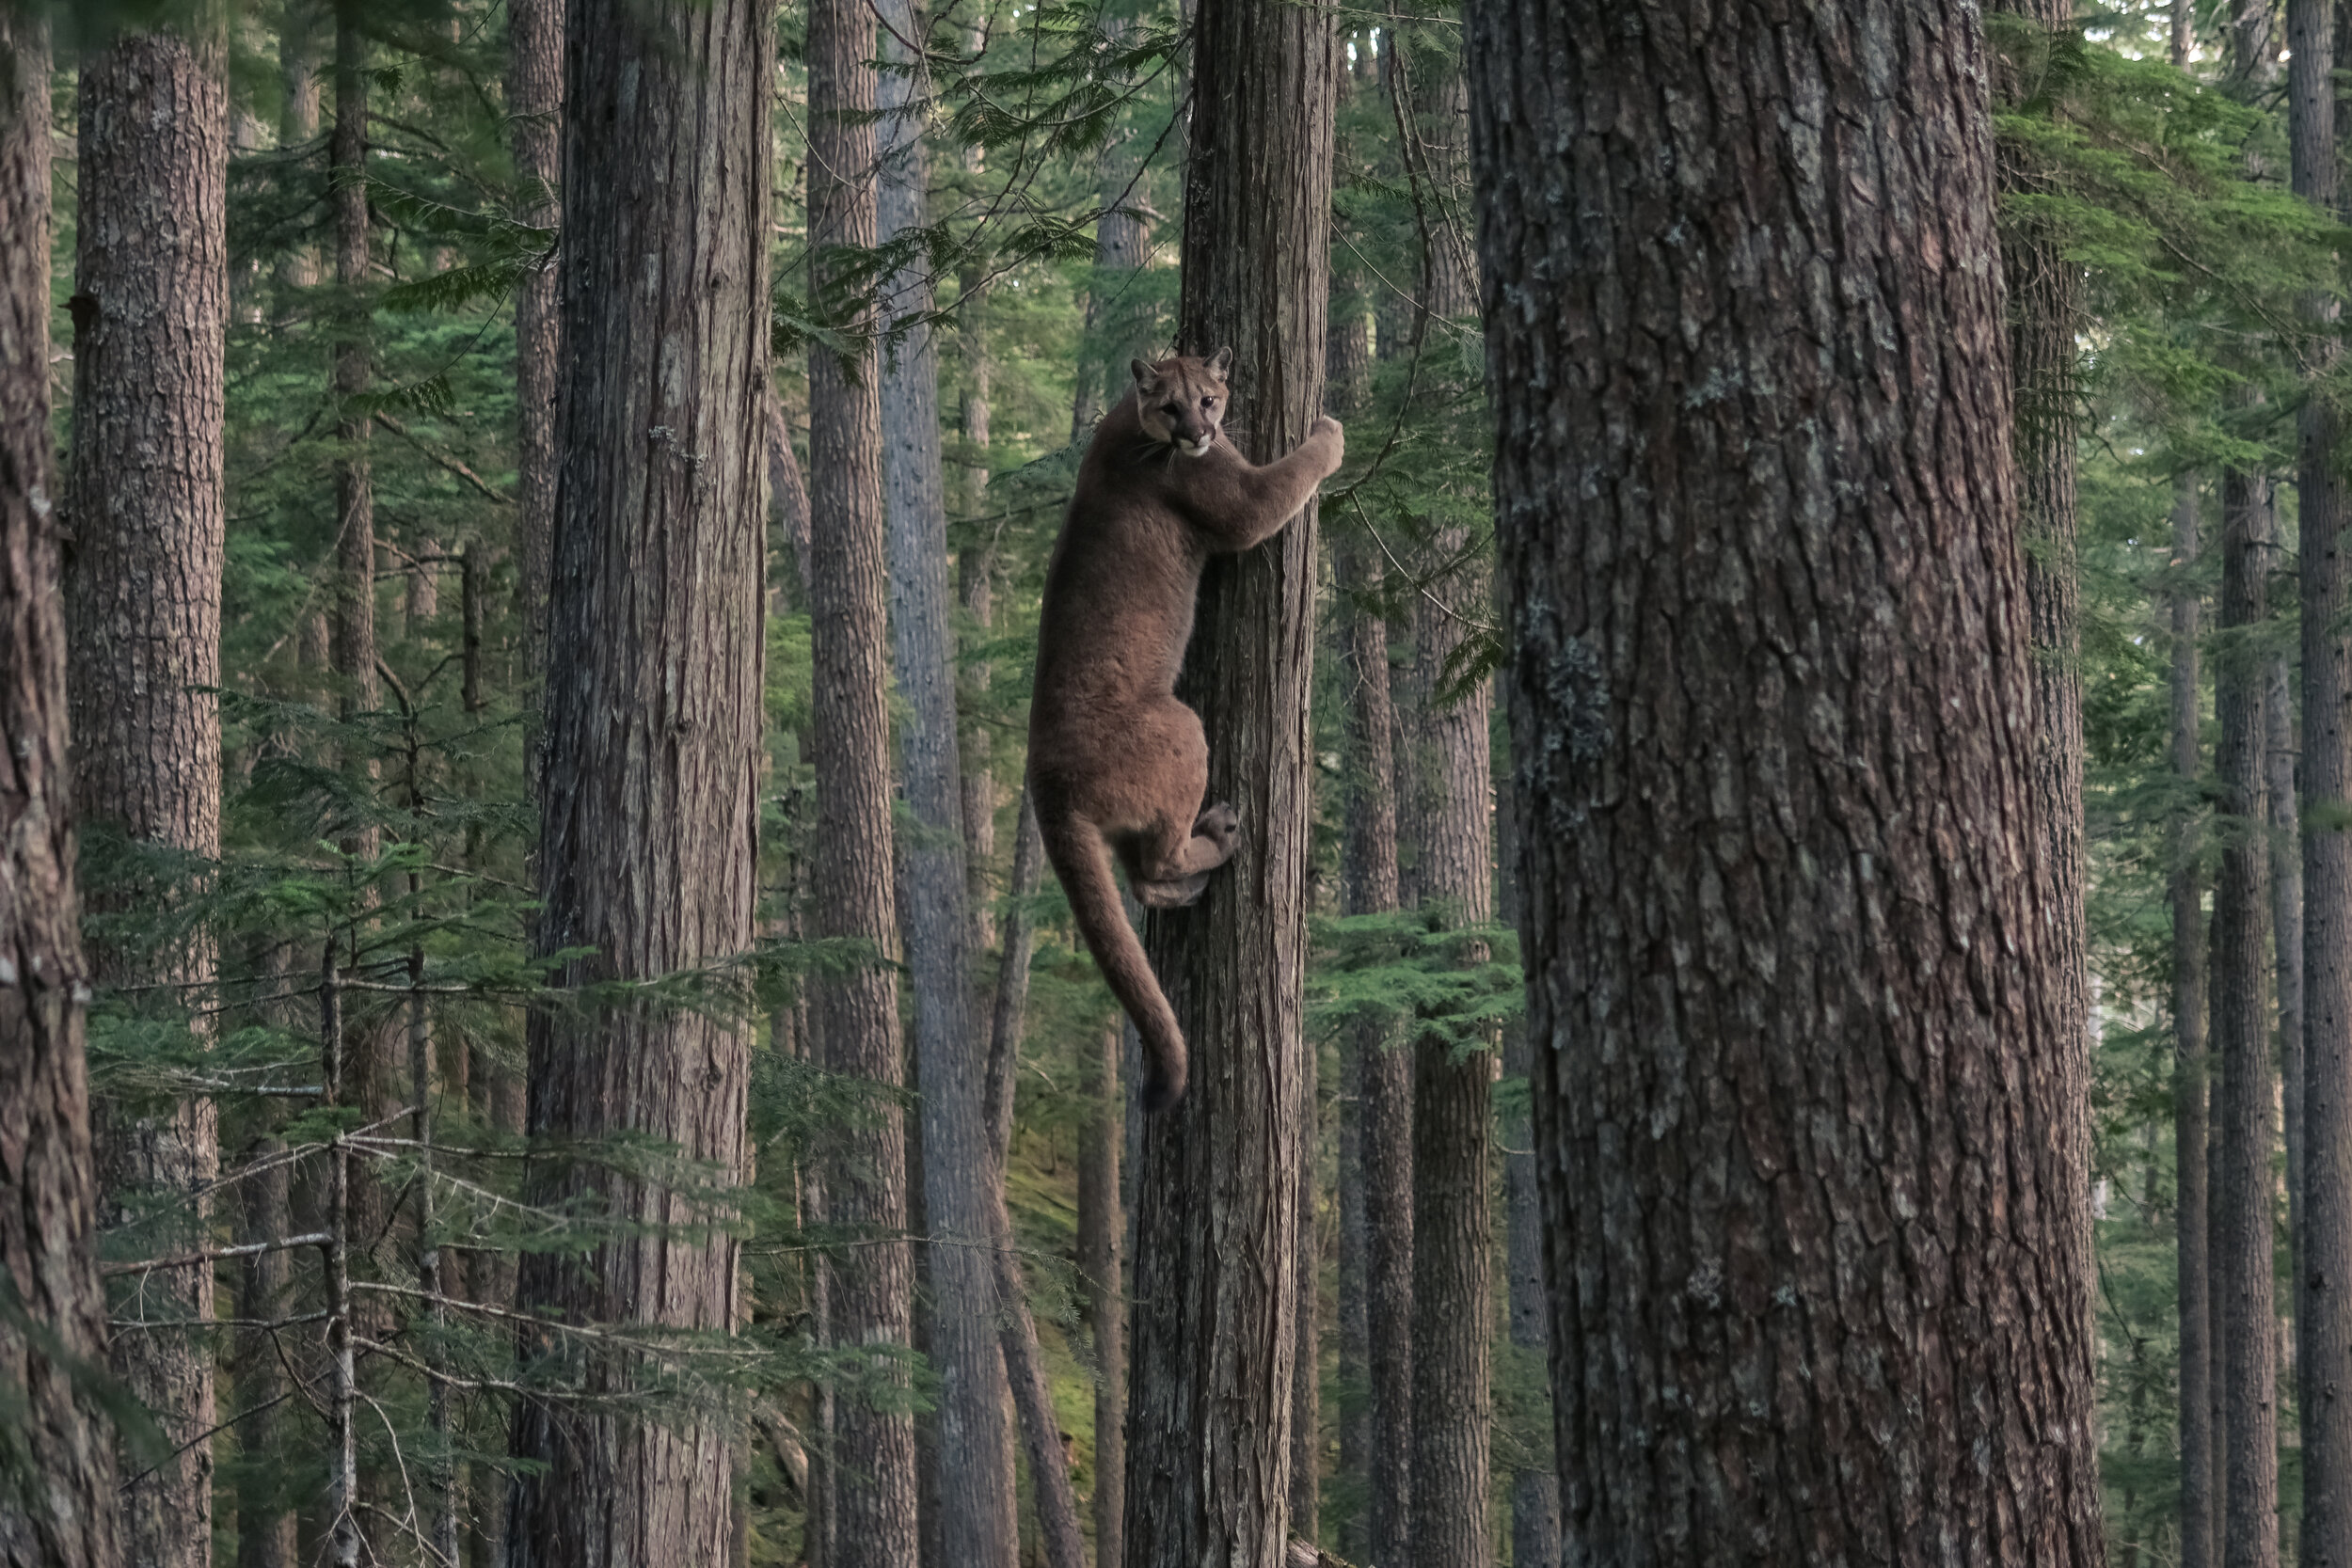  Mountain Lion, Whistler, BC. Canada 